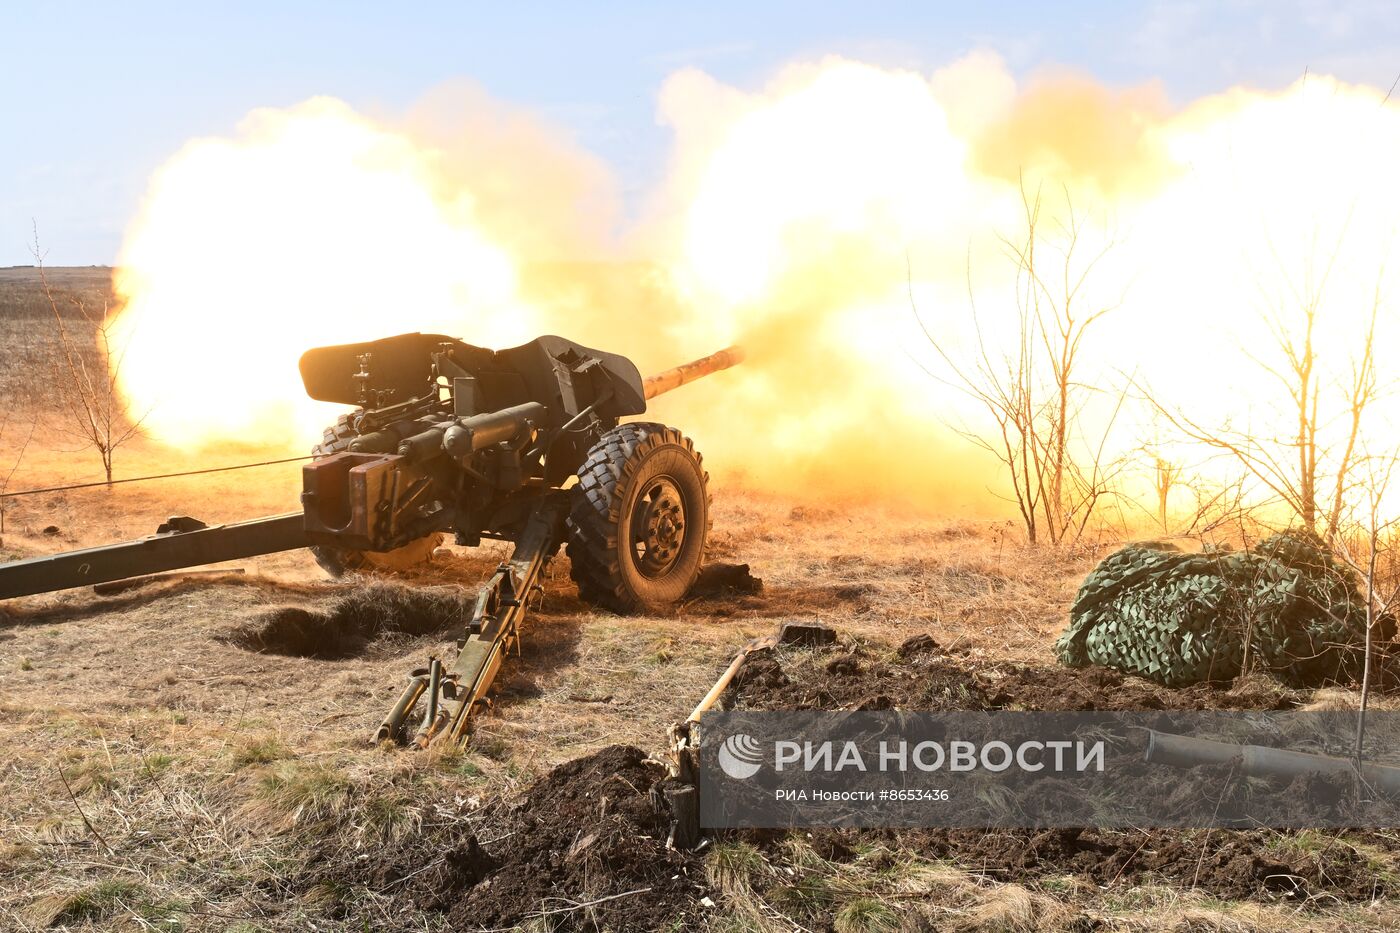 Боевая подготовка артиллеристов Южной группировки войск